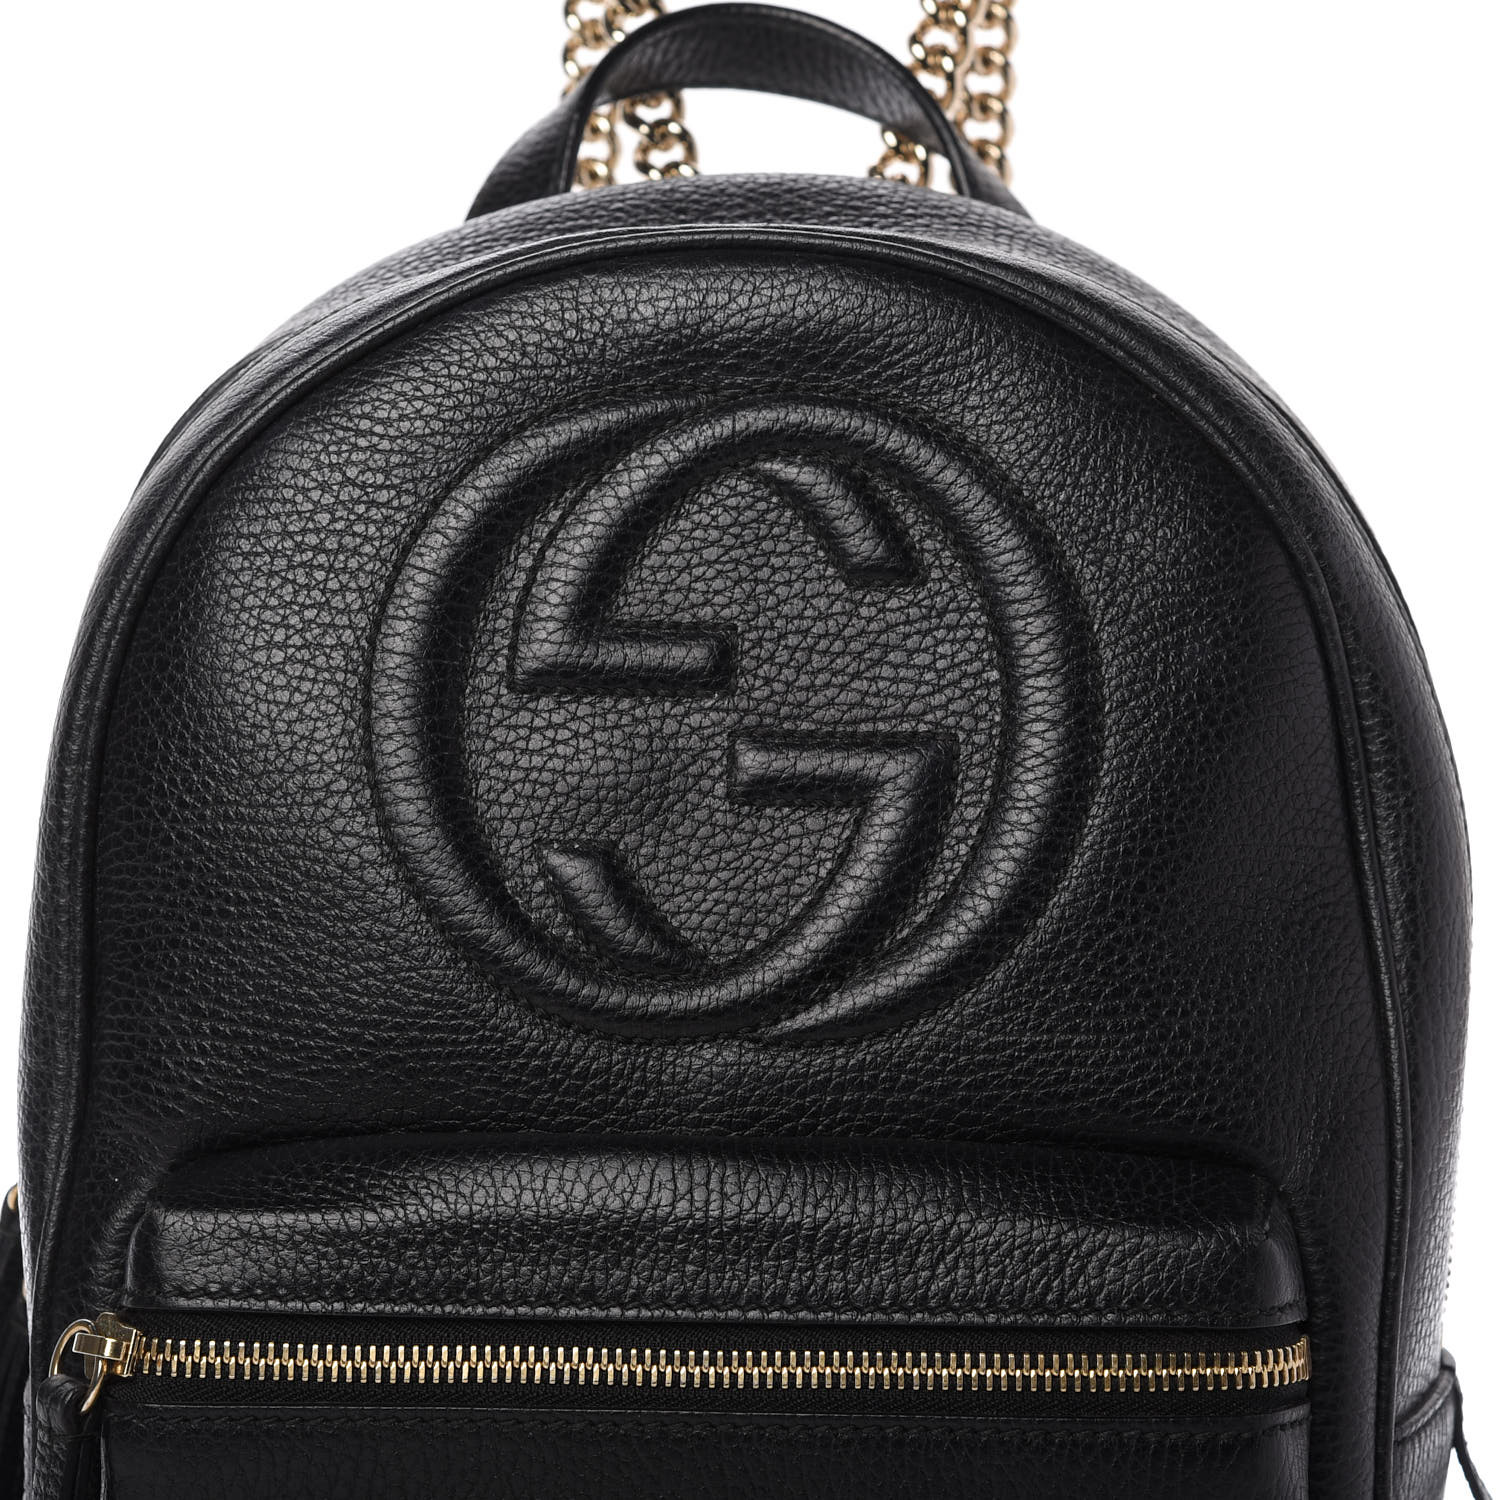 GUCCI Pebbled Calfskin Soho Chain Backpack Black 781174 | FASHIONPHILE